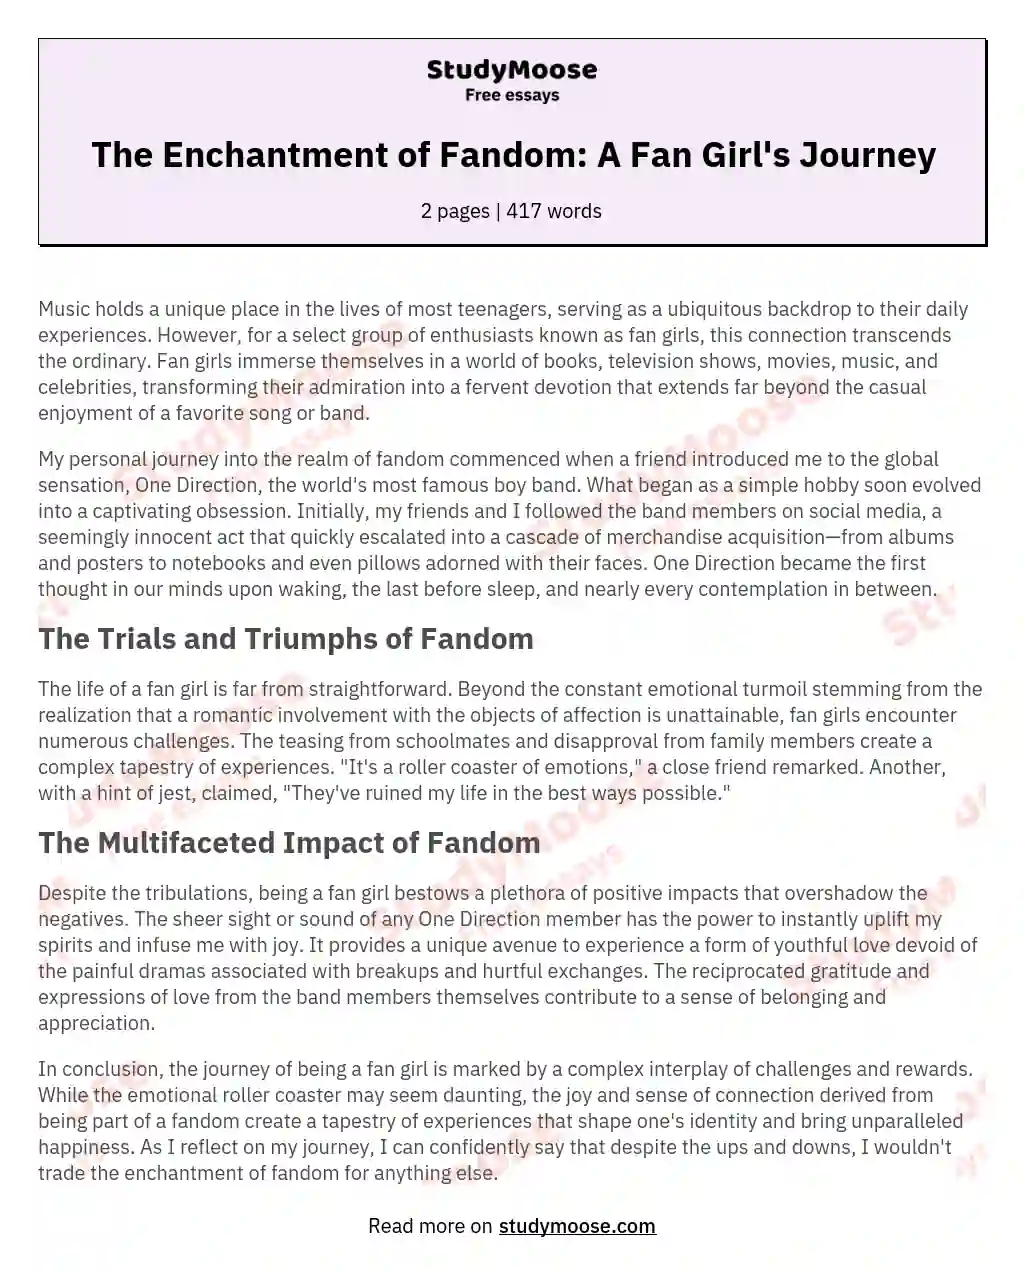 The Enchantment of Fandom: A Fan Girl's Journey essay